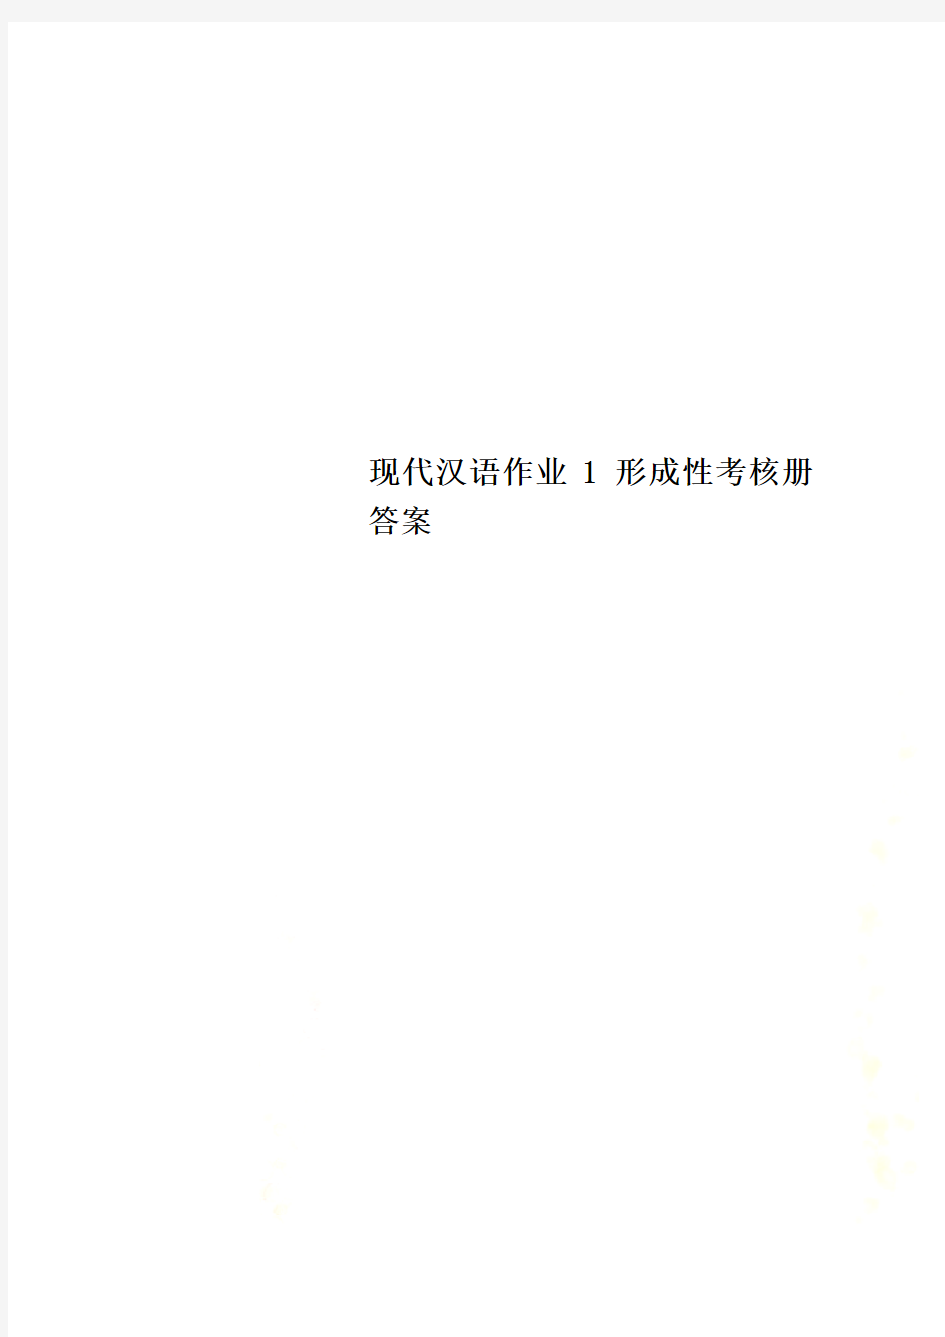 现代汉语作业1 形成性考核册答案